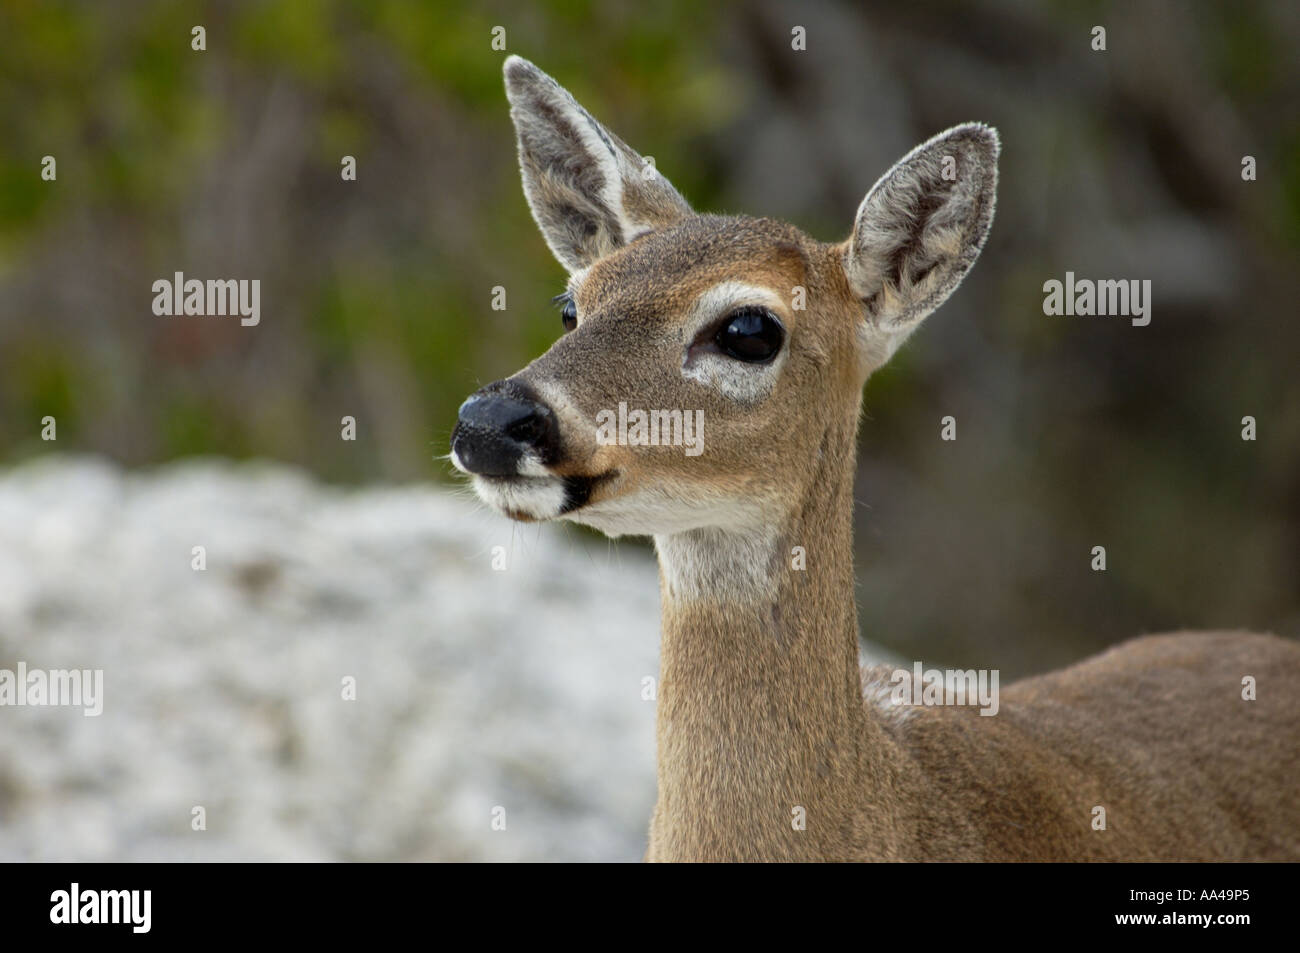 Key deer une espèce en voie de Big Pine Key National Wildlife Refuge, en Floride. Photographie numérique Banque D'Images